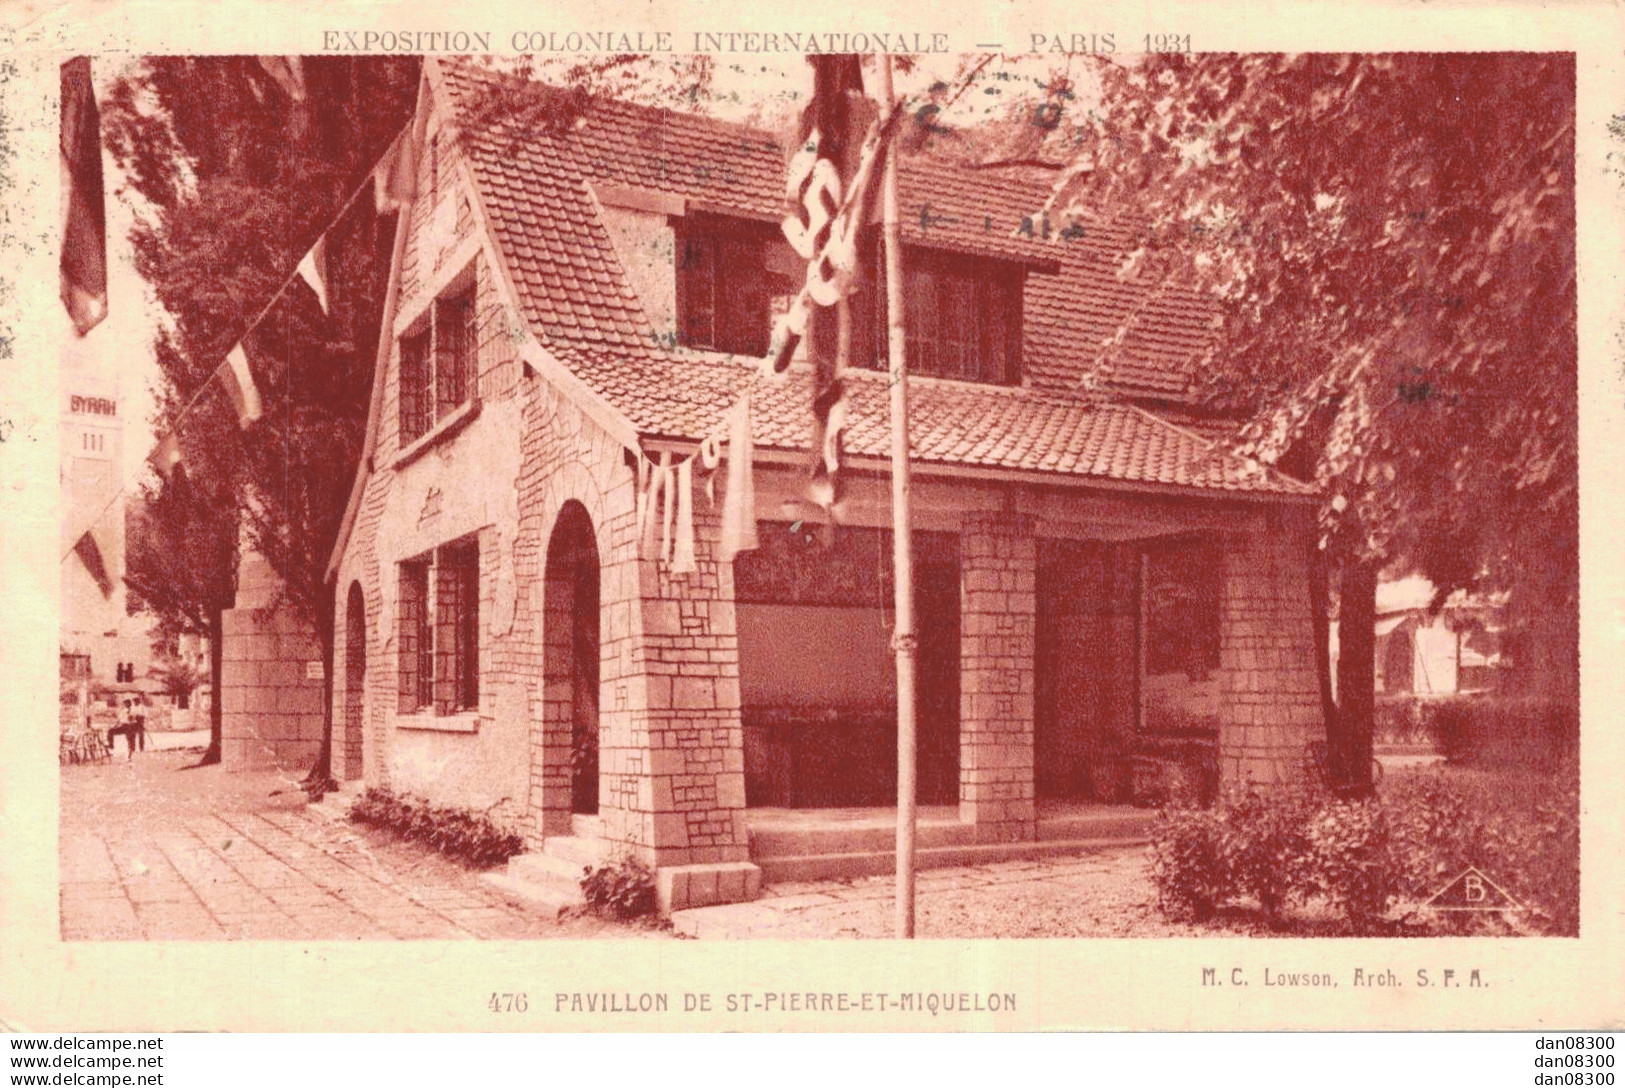 75 EXPOSITION COLONIALE INTERNATIONALE PARIS 1931 PAVILLON DE SAINT PIERRE ET MIQUELON - Expositions